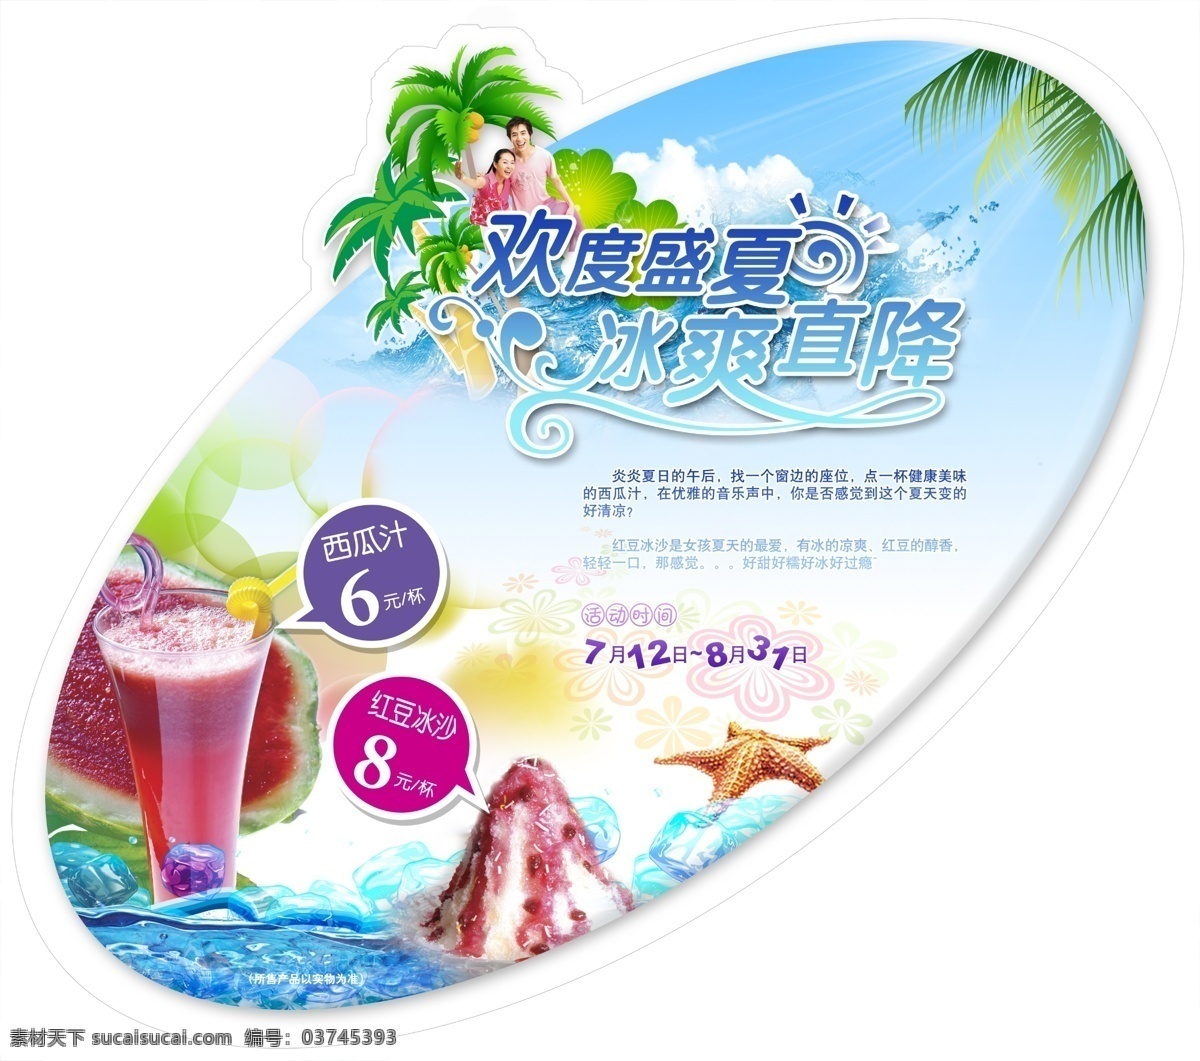 饮料 店 吊牌 广告 中文字 人物 冰淇淋 椰树 冰块 沙滩 海星 蓝色天空 白色背景